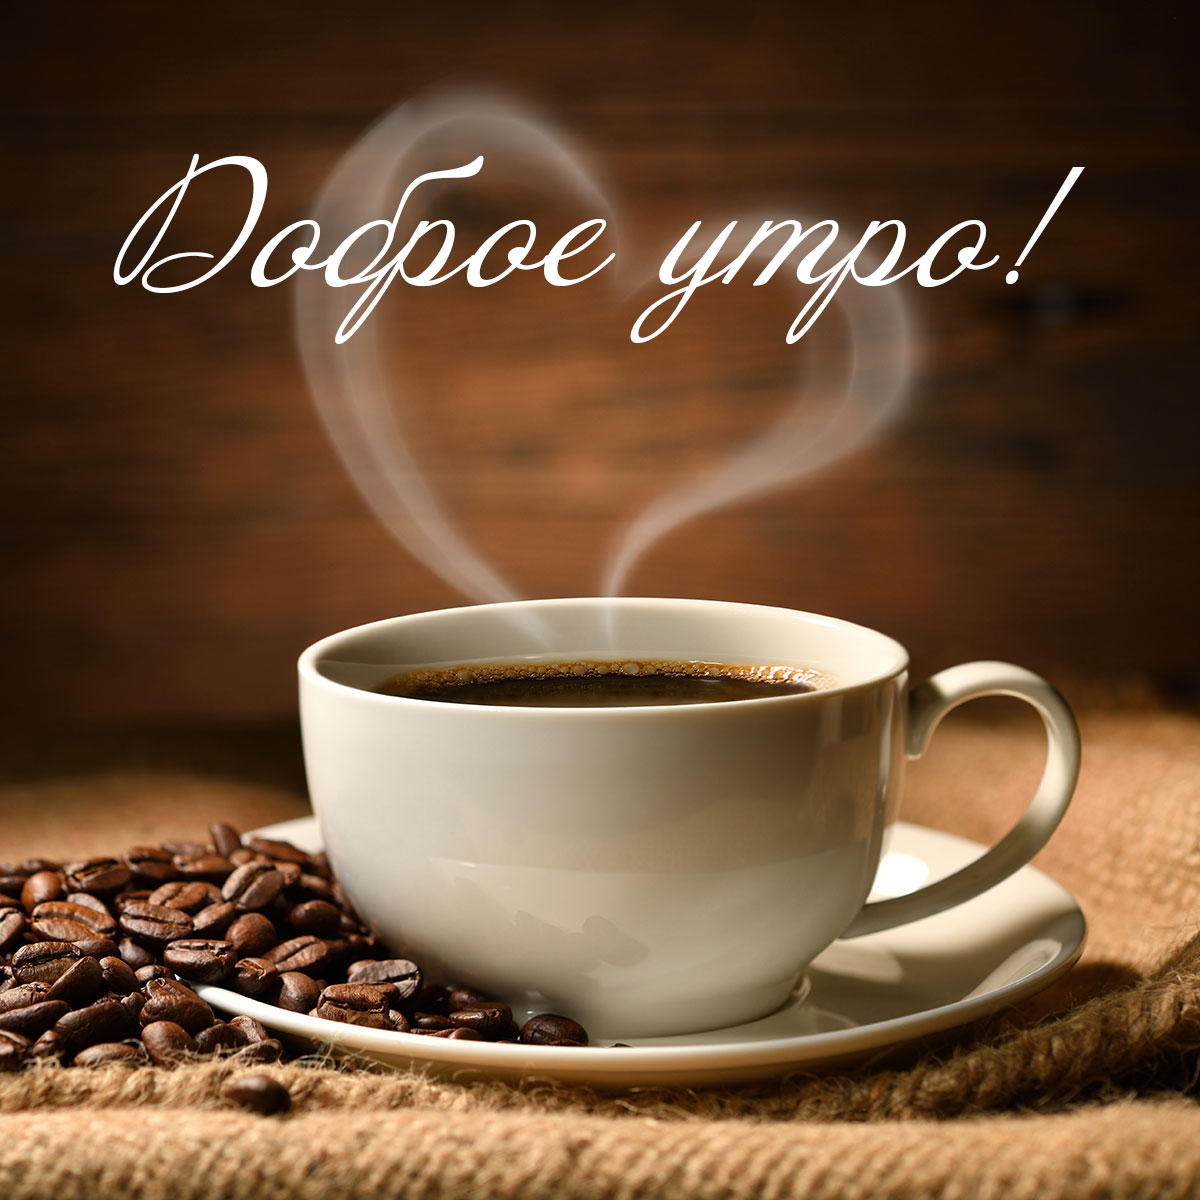 Фото доброе утро с кофе в чашке и кофейными зернами.